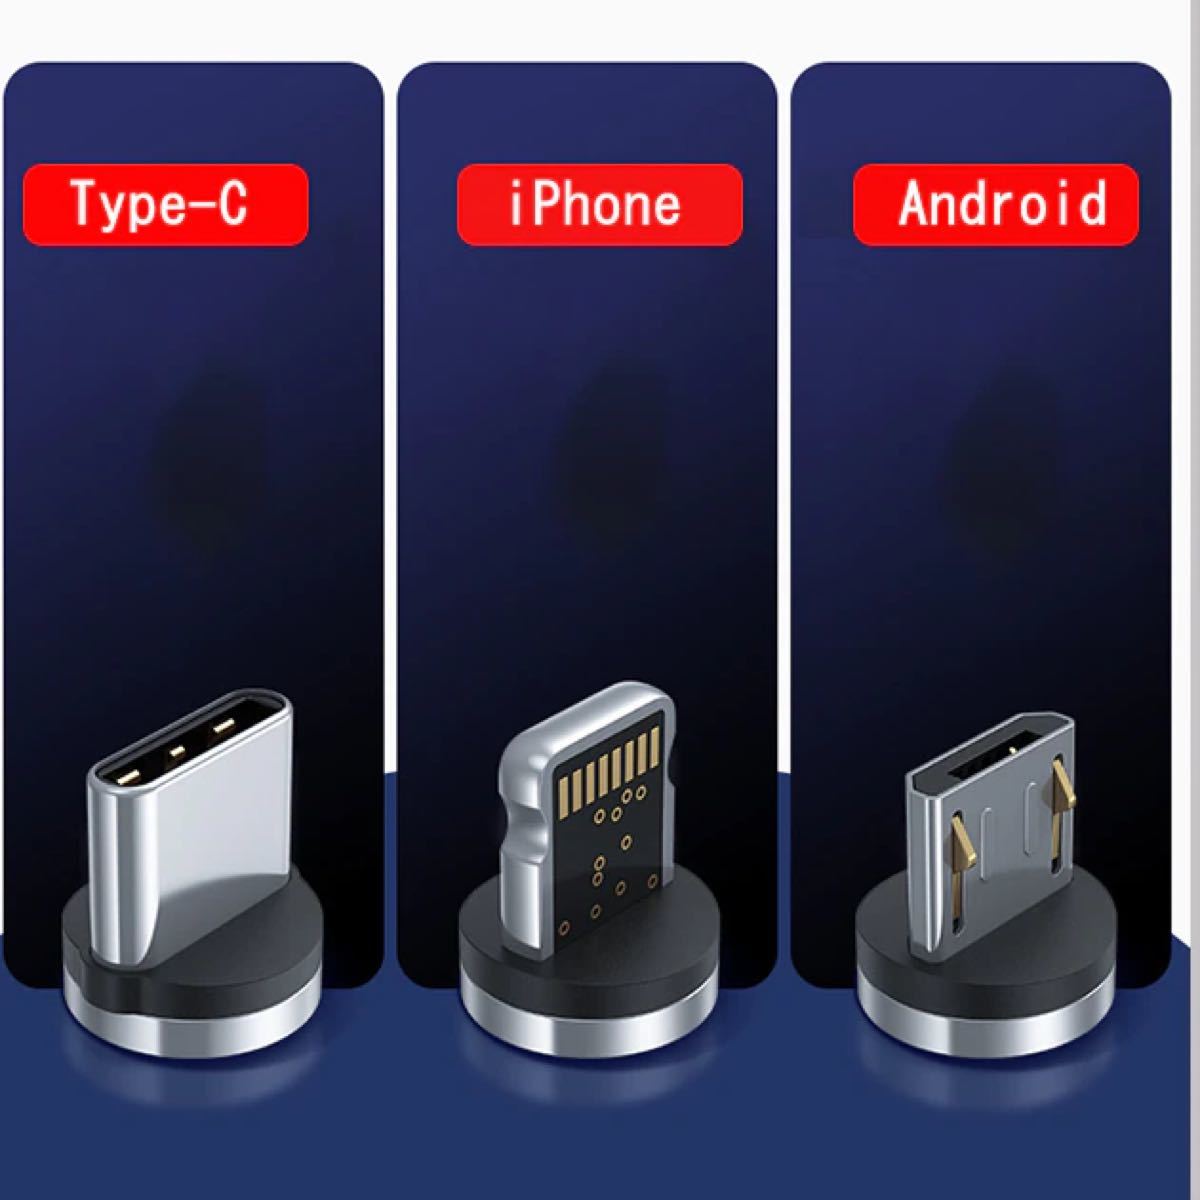 マグネット充電ケーブル1M*3本+端子*6（iPhone *2+Android *2+TYPE-C*2急速充電 磁石式ケーブル 